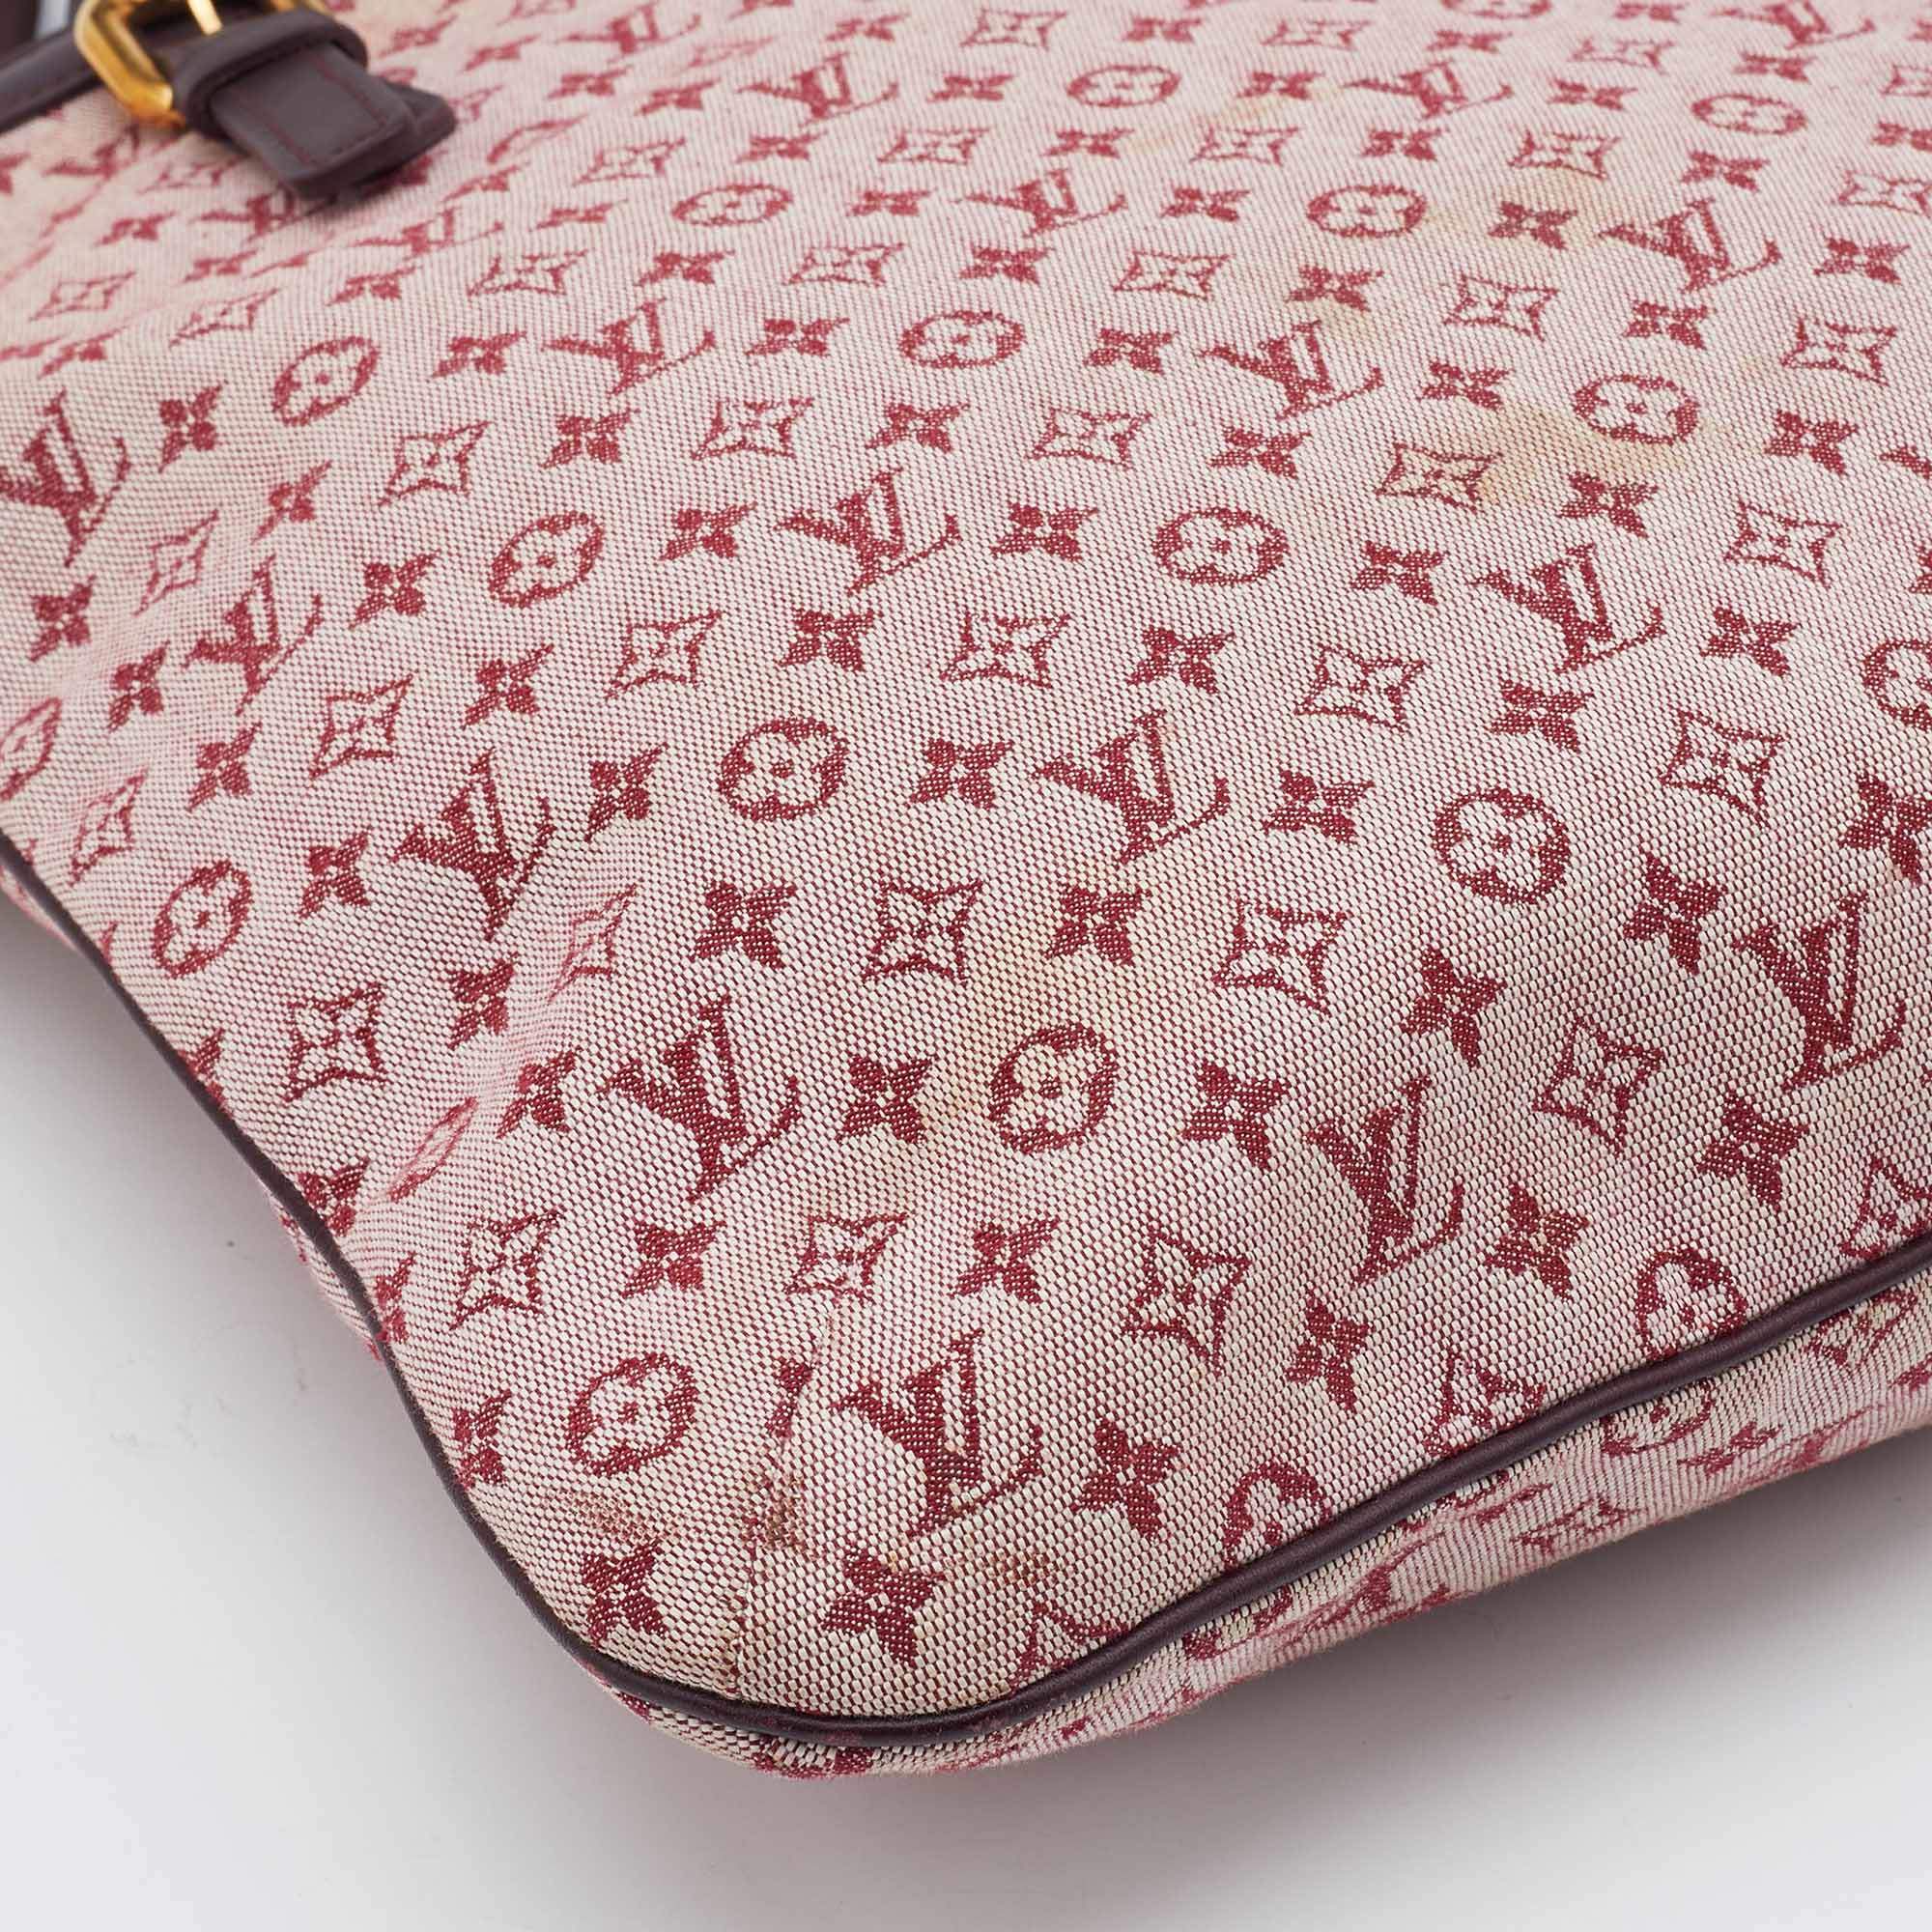 Louis Vuitton Cherry Monogram Mini Lin Francoise Bag For Sale at